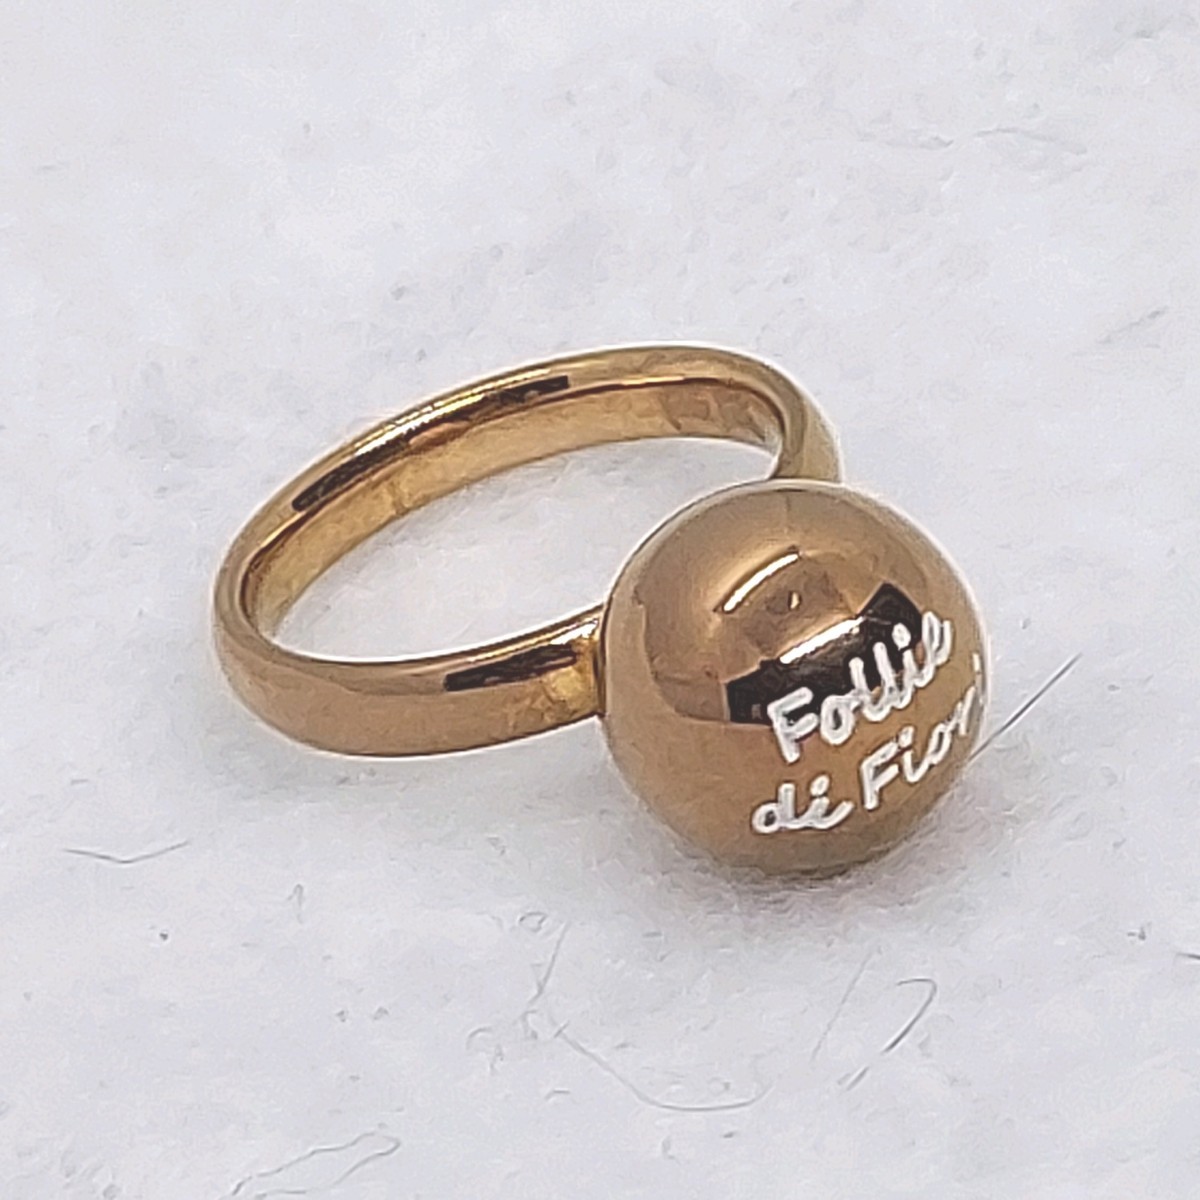  Folli Follie Folli Follie примерно 11 номер мяч кольцо кольцо 